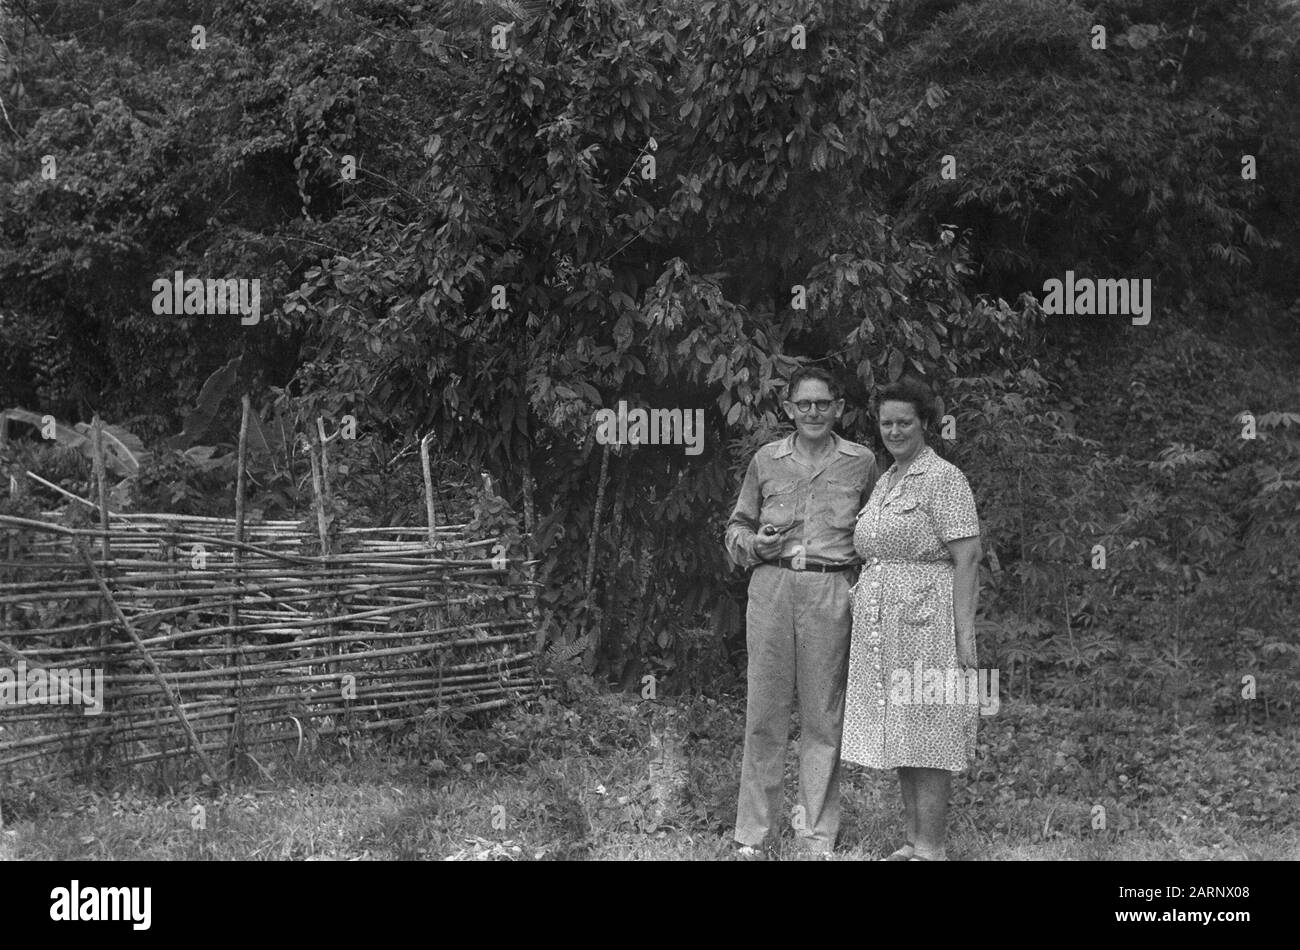 Neuguinea-Serie Jungle Reverend J, Eygendaal mit seiner Frau für einen Kakaobusch in ihrem Garten auf Miei, dass wie ein Sandkorn am Fuß eines riesigen, grünen Bergenklomps Datum: Oktober 1948 Ort: Indonesien, Niederländische Ostindien Stockfoto